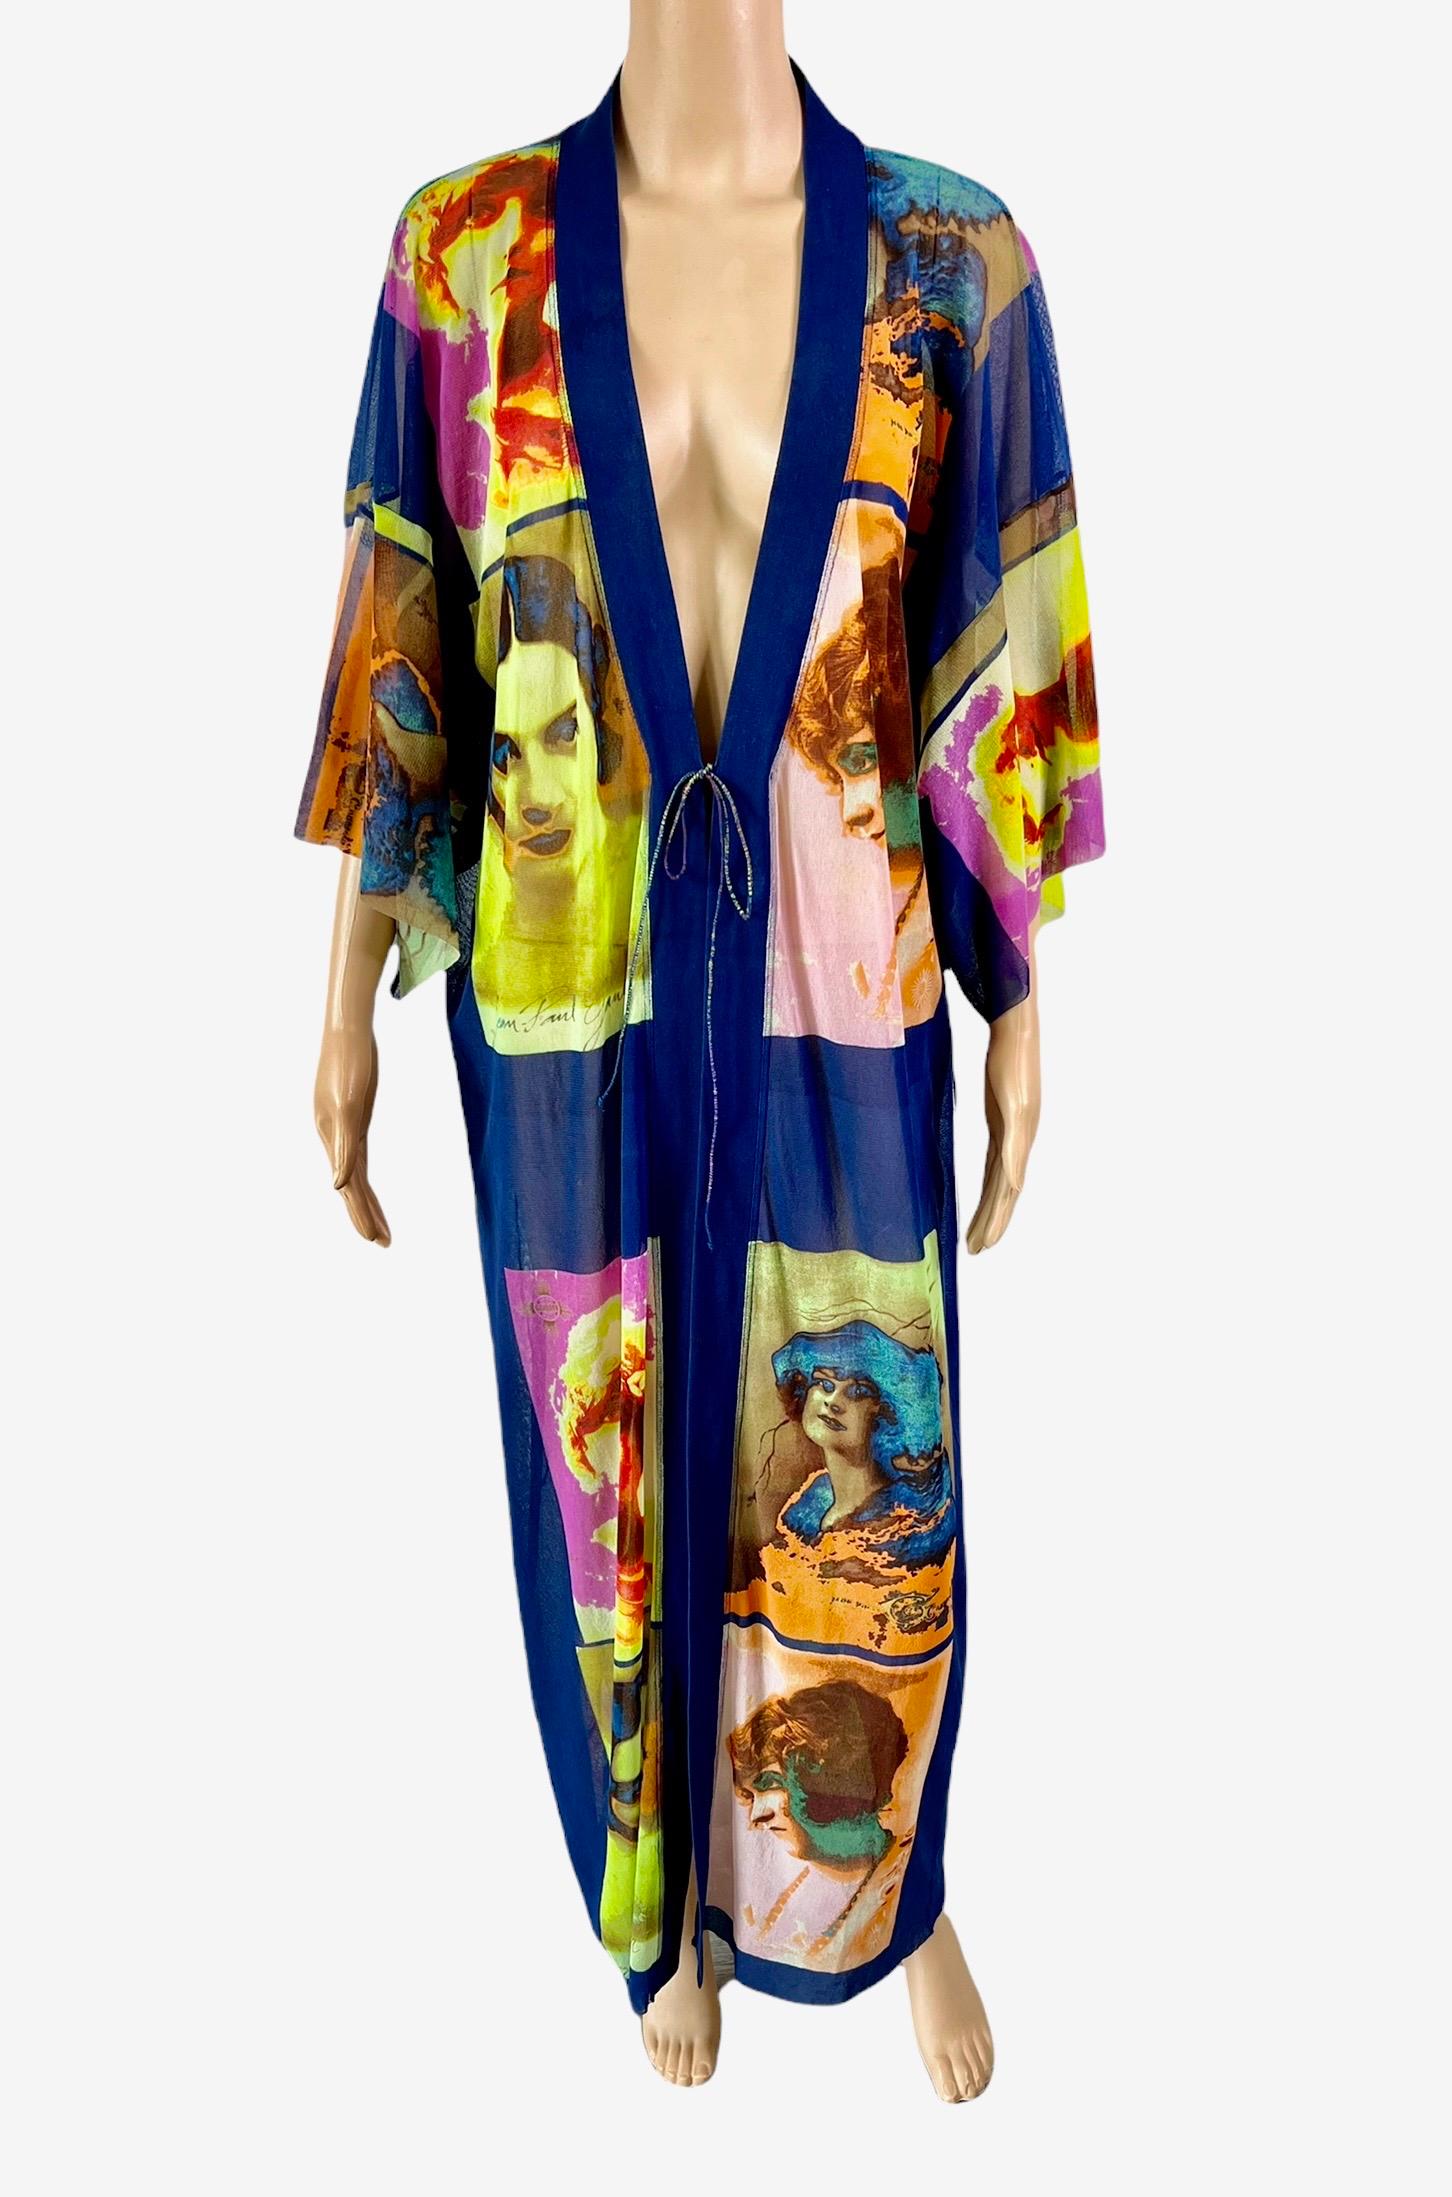 Women's or Men's Jean Paul Gaultier Soleil S/S 2002 Vintage “Portraits” Mesh Maxi Dress Kimono For Sale